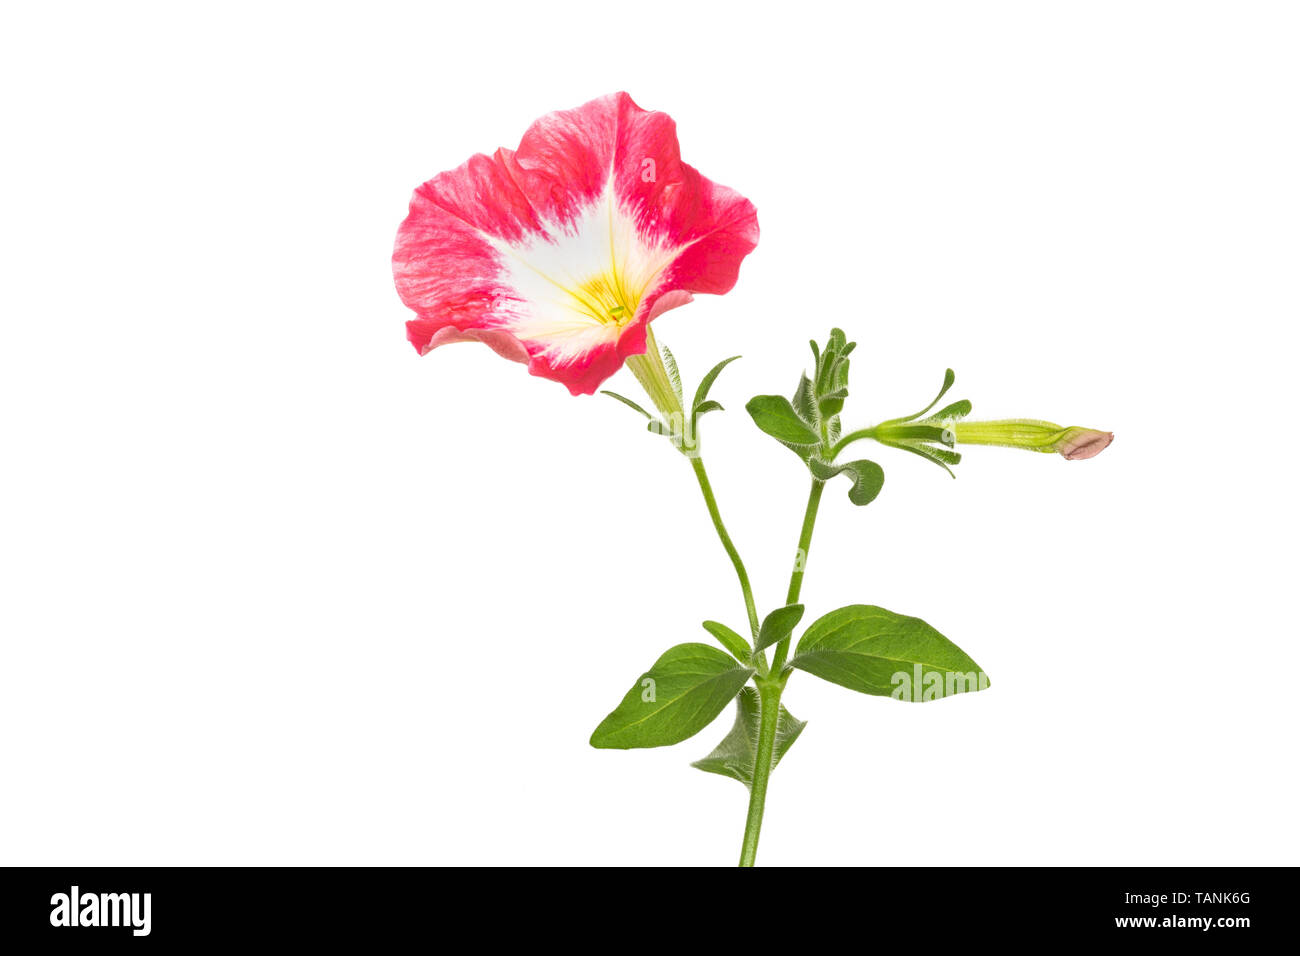 Pétunia rose fleur sur fond blanc Banque D'Images